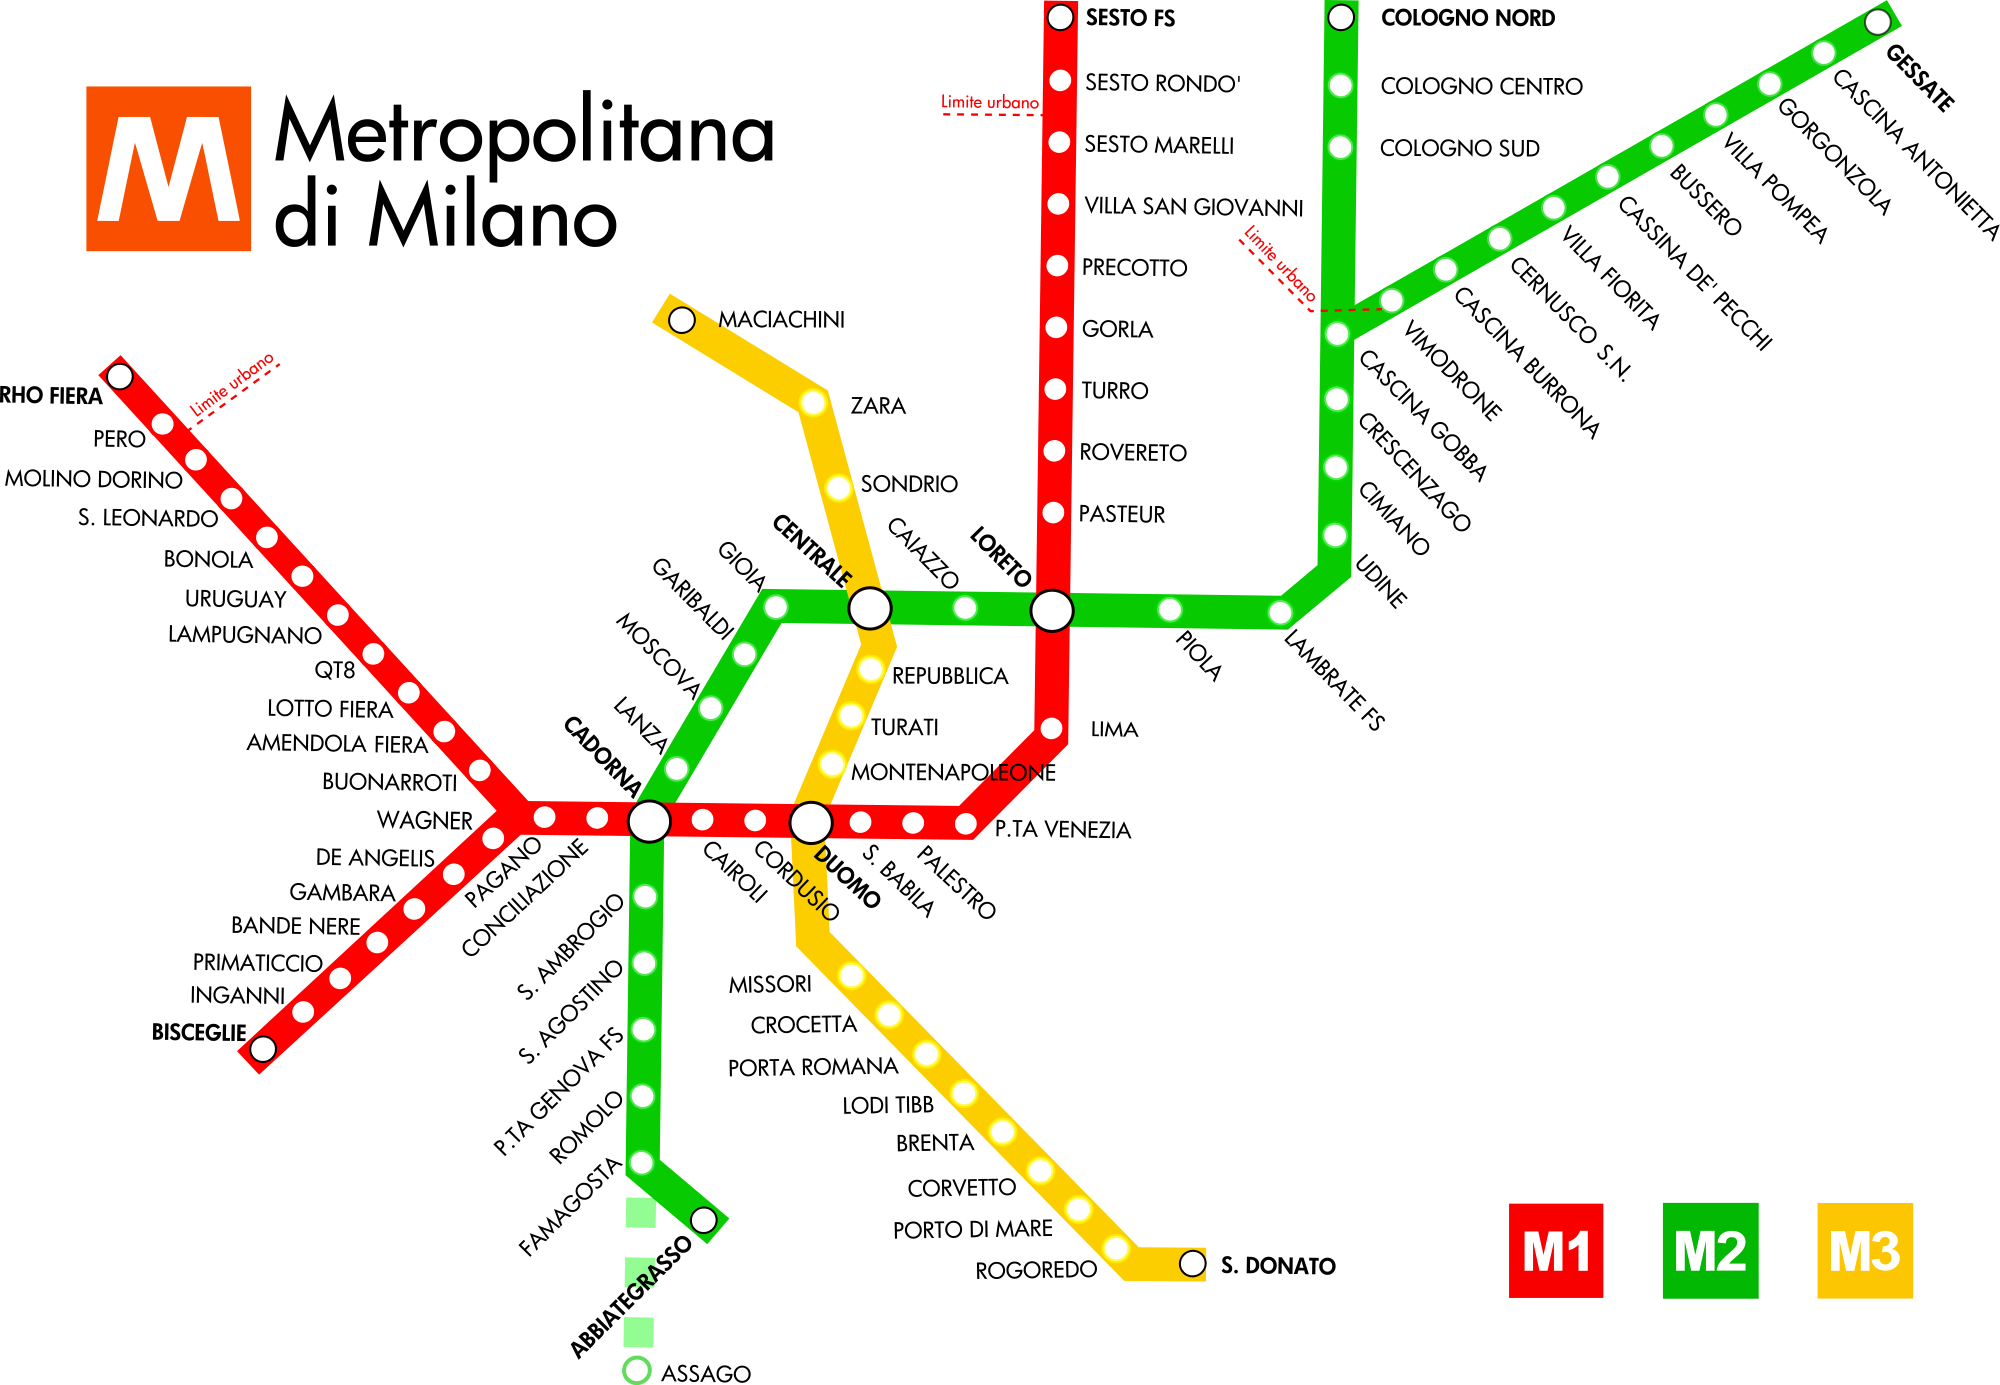 Mappa Di Metropolitana Di Milano Italia